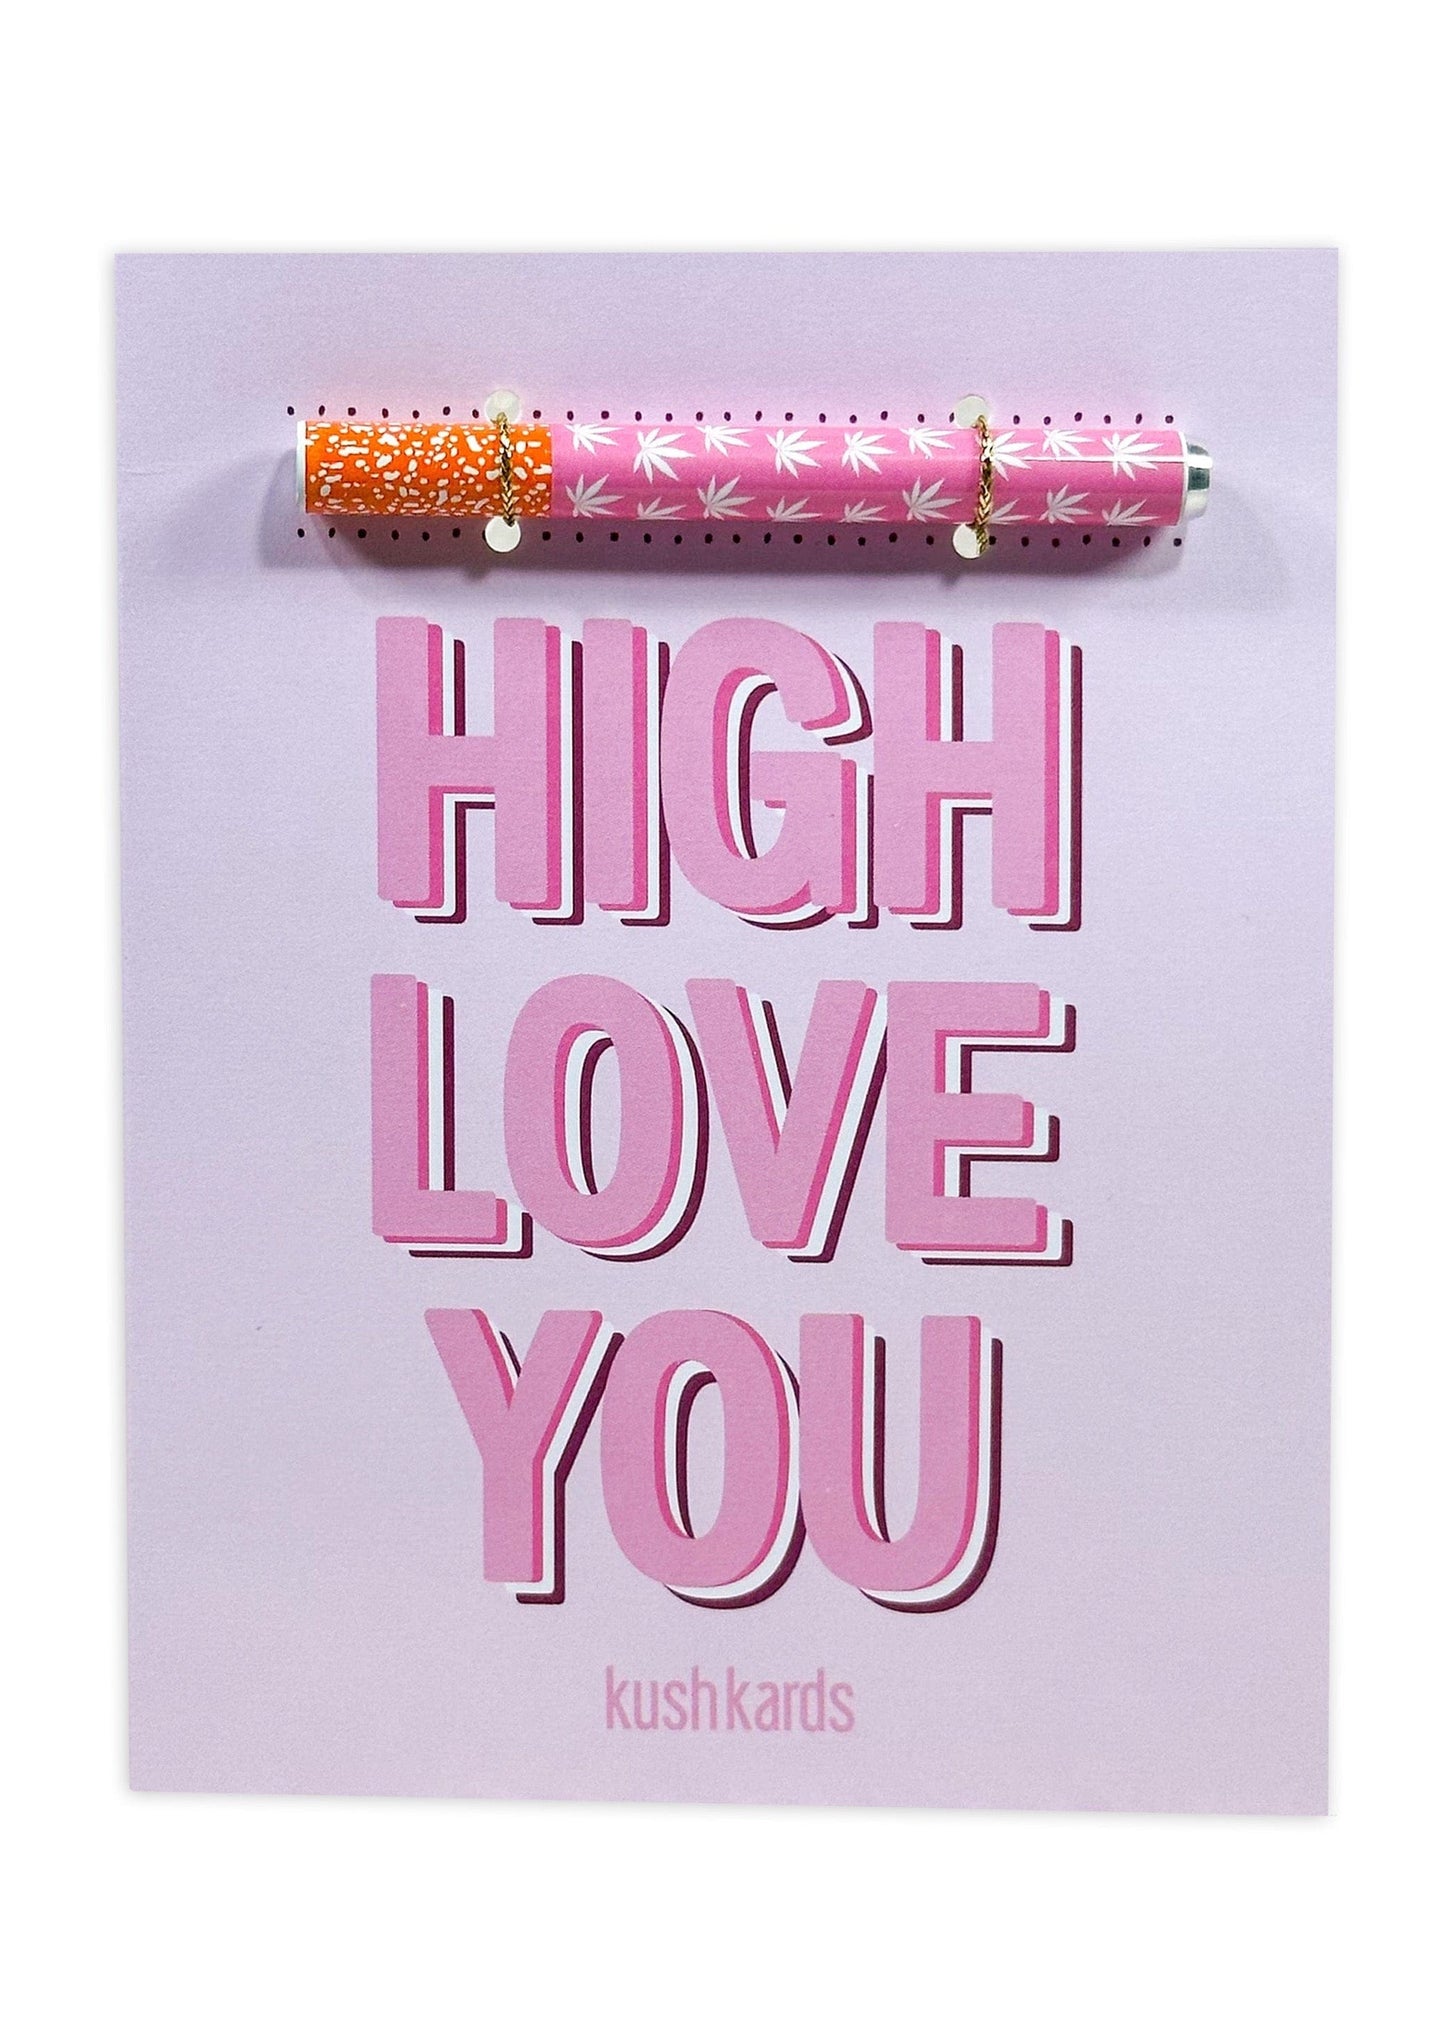 KushKards One Hitter Kard 💗 High Love You Cannabis Greeting Card